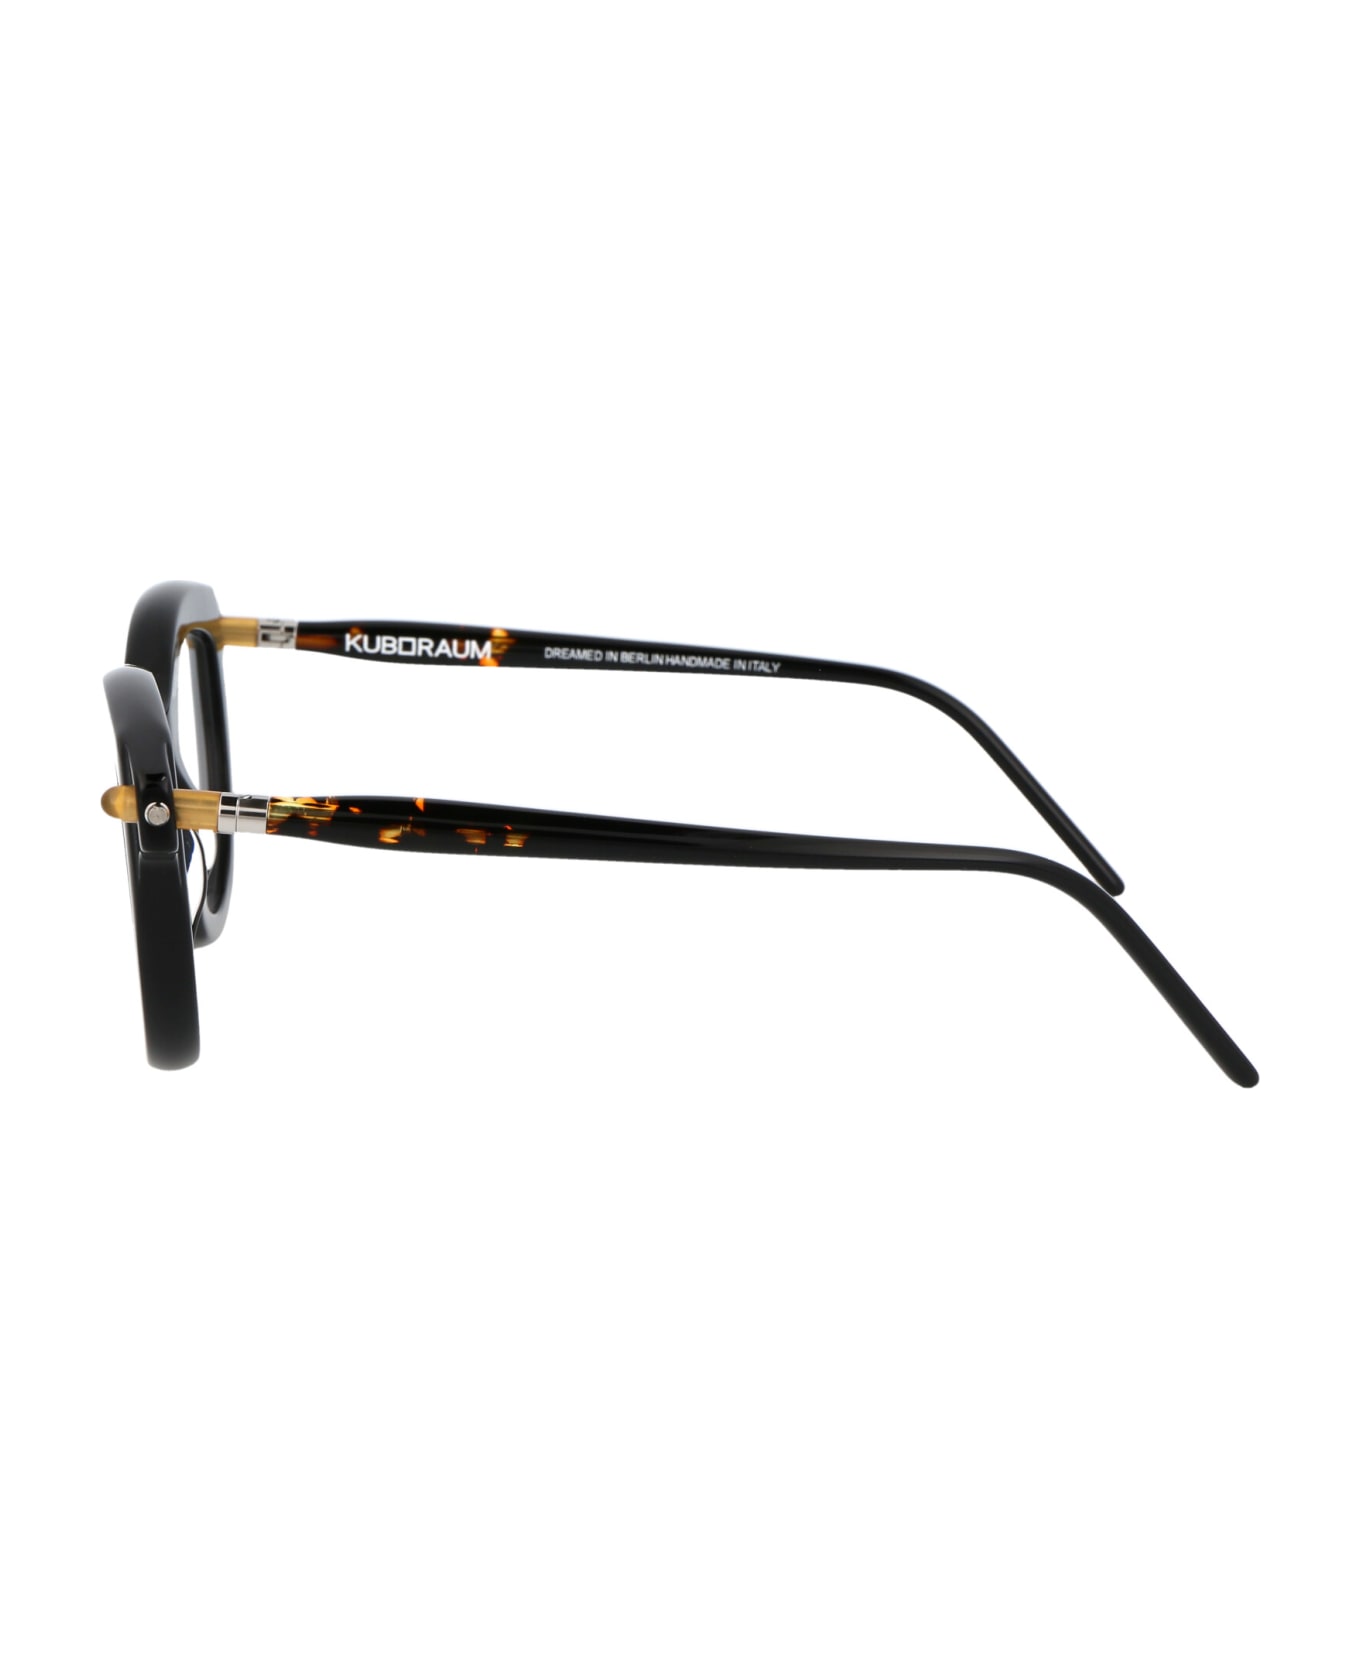 Kuboraum Maske P7 Glasses - BS DT アイウェア